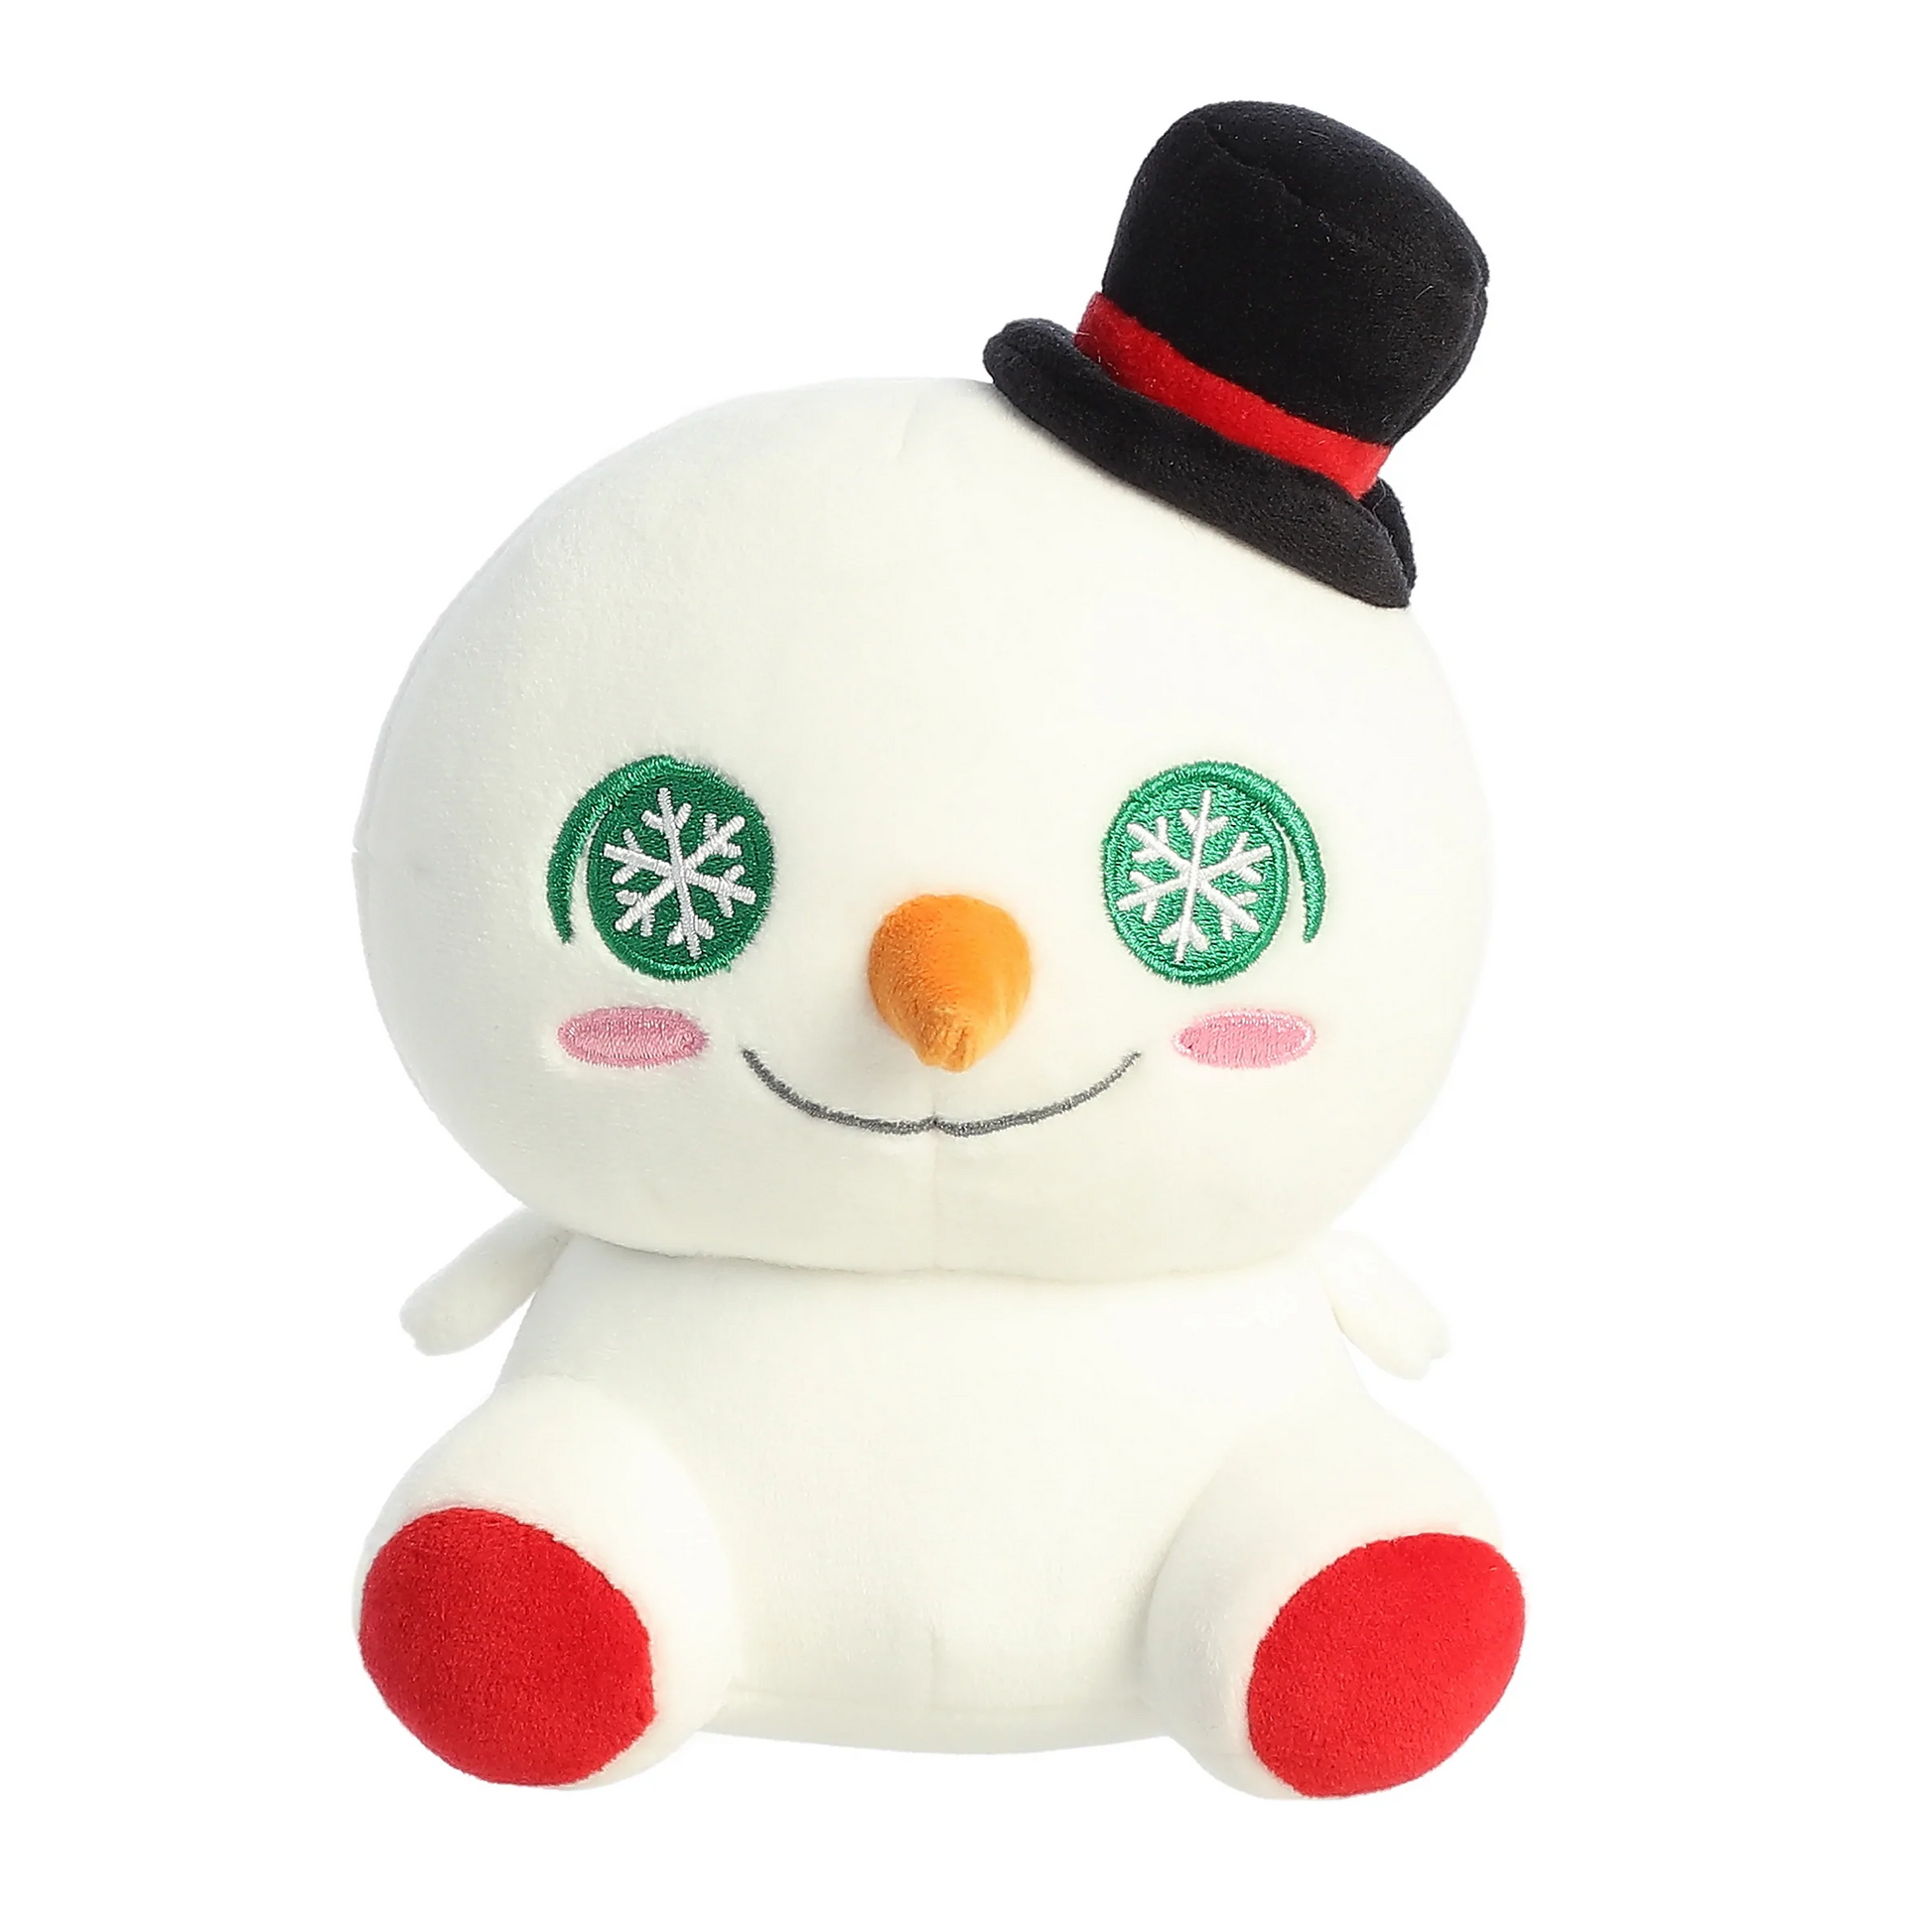 Squishy Snowman Plush 5.5"